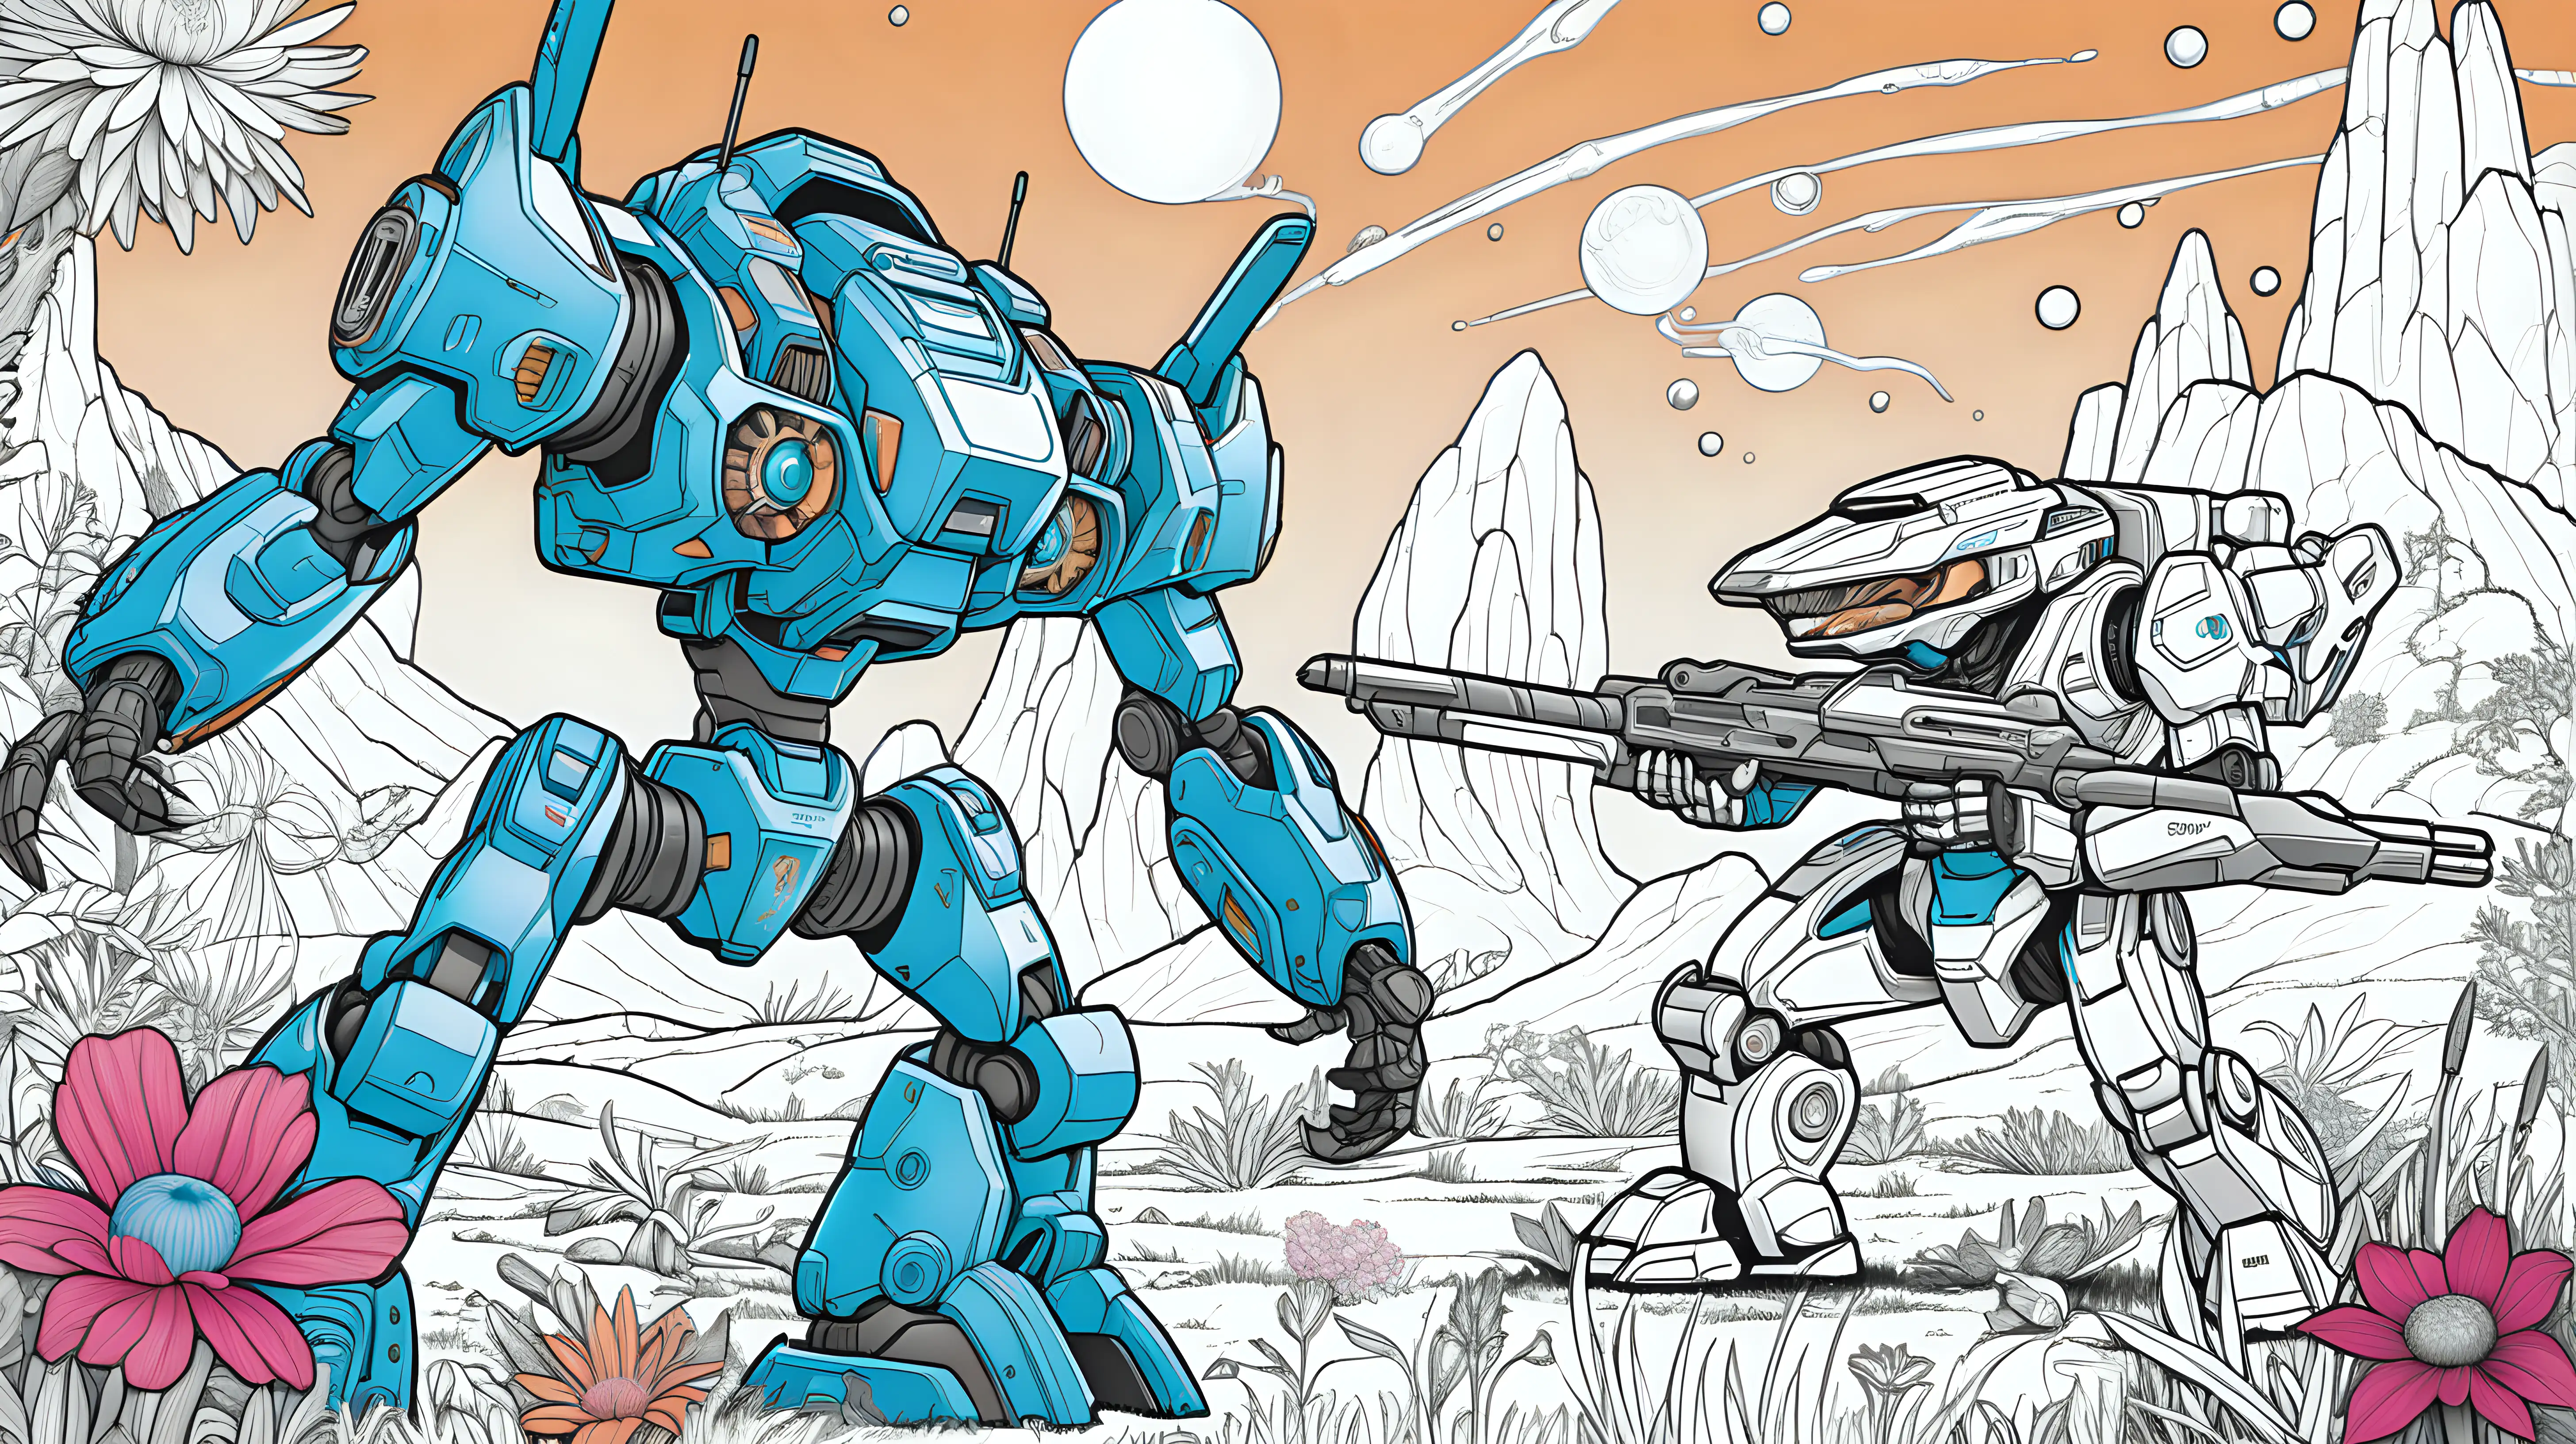 Epic Mechs Battle in Vibrant Alien Landscape Coloring Book Style Cover Art